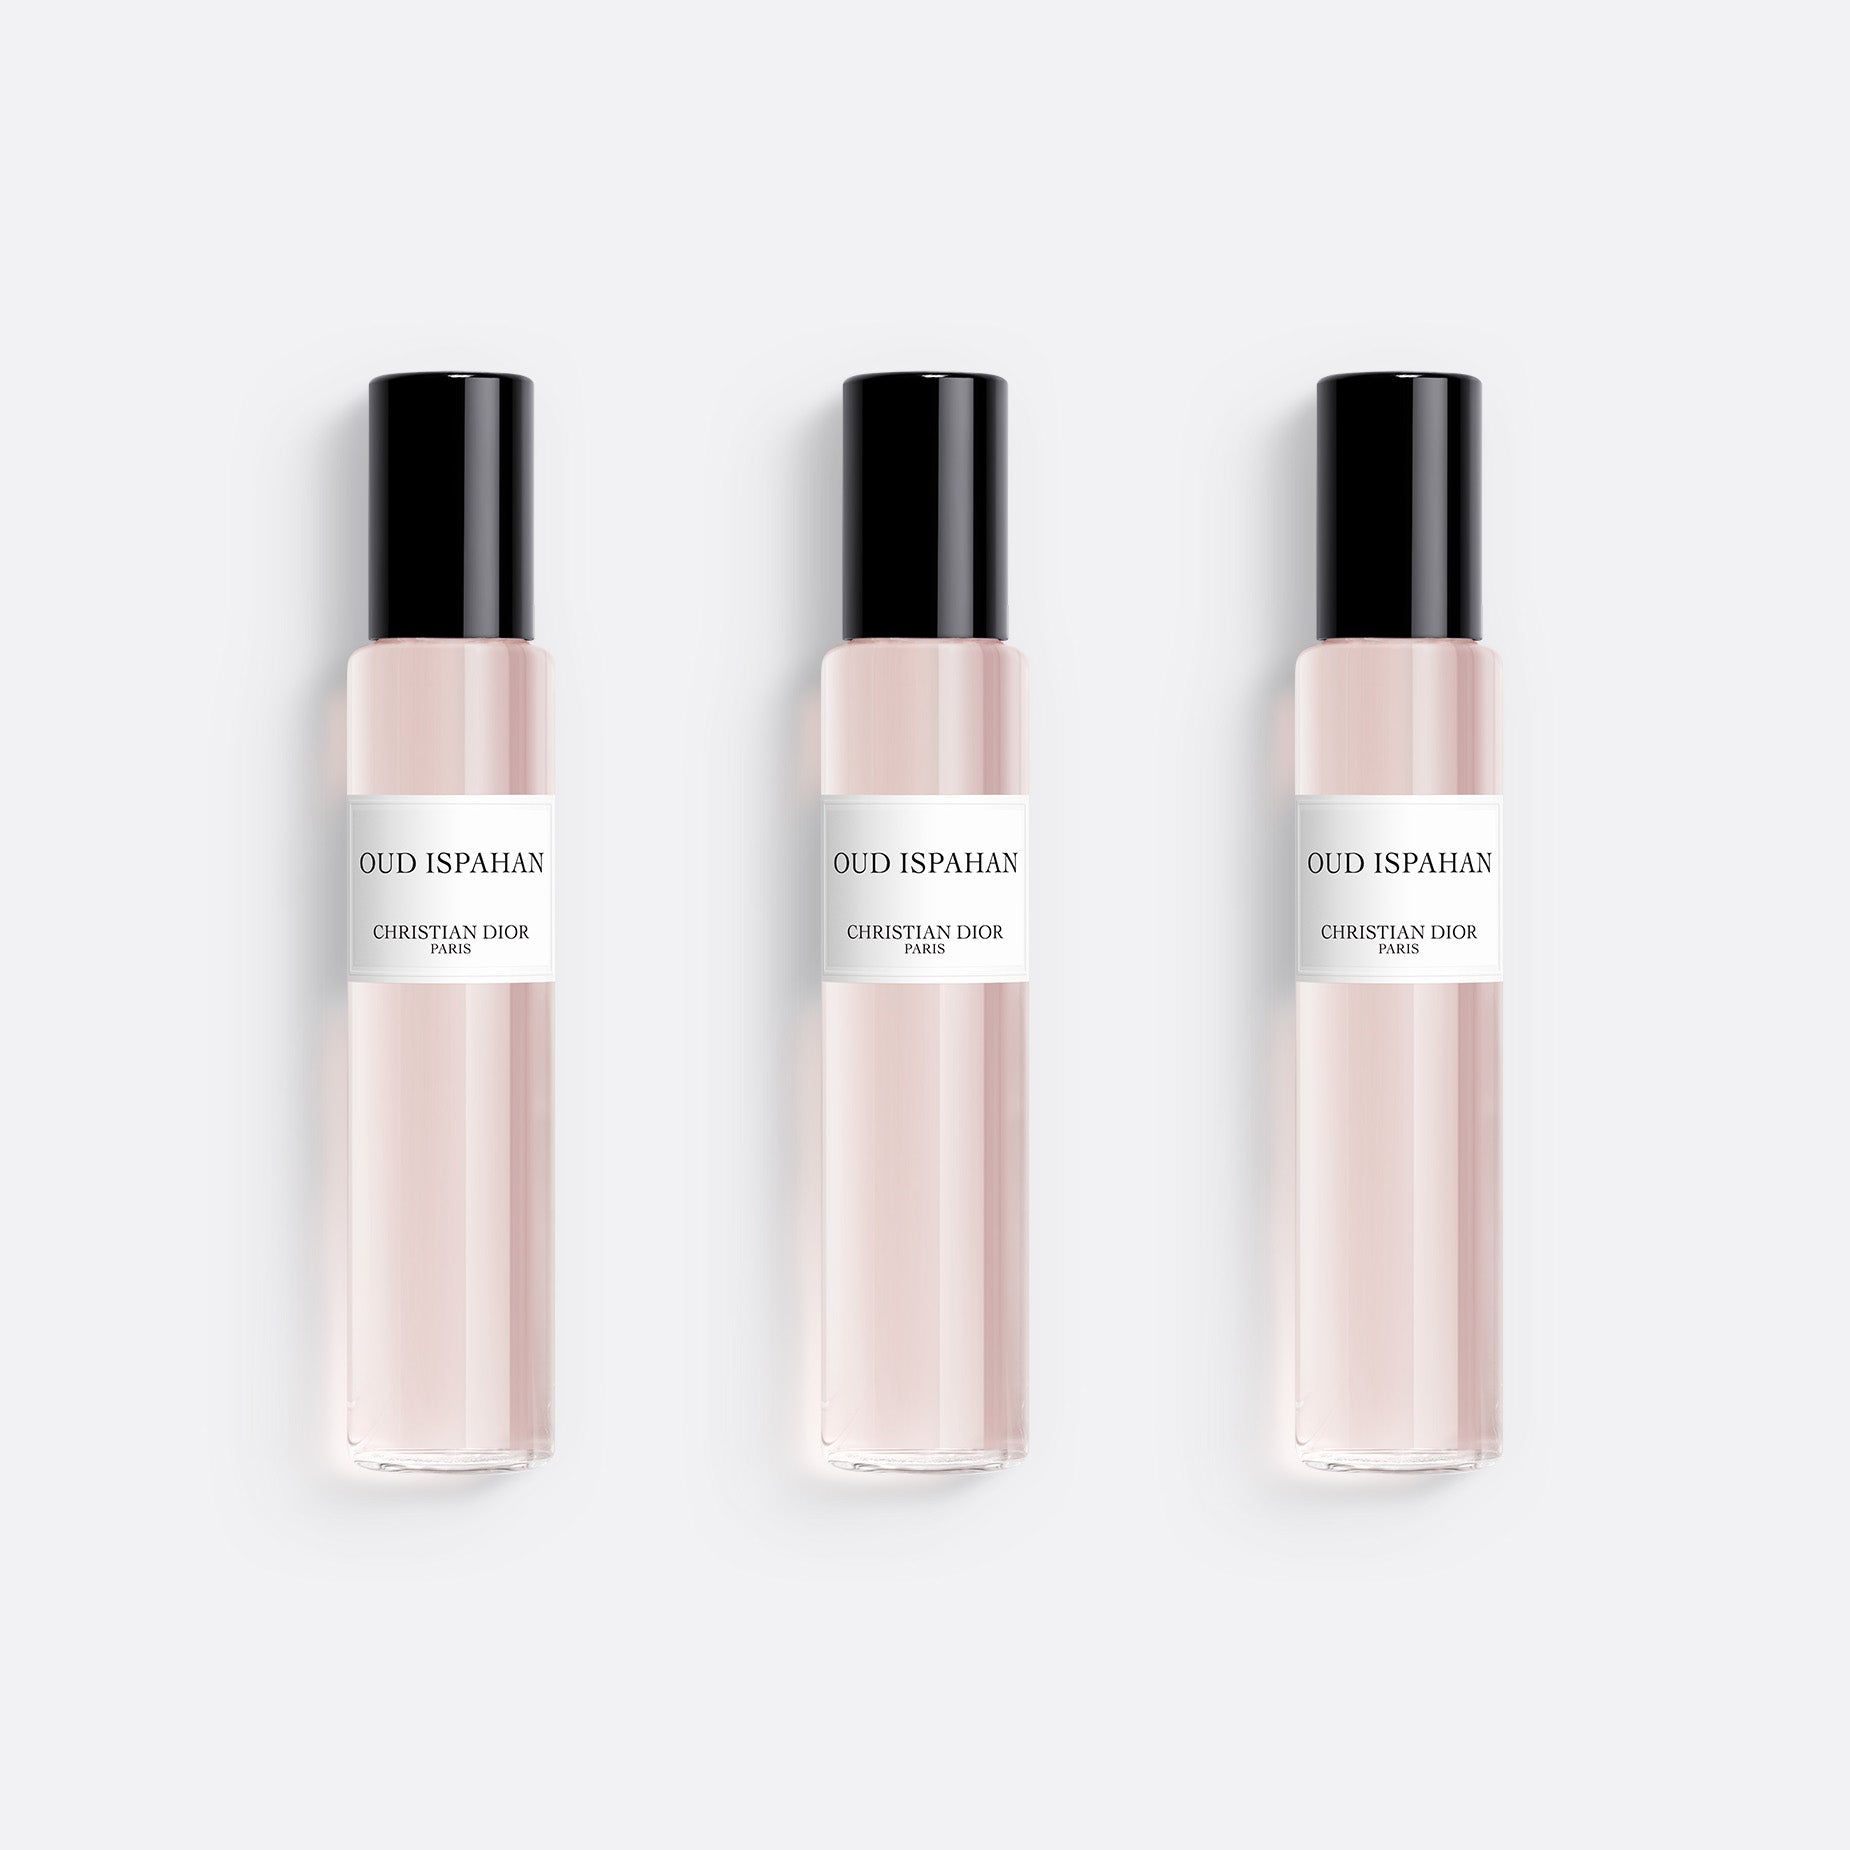 Christian Dior - LVMH Parfums - Vila Olímpia - 1 dica de 15 clientes